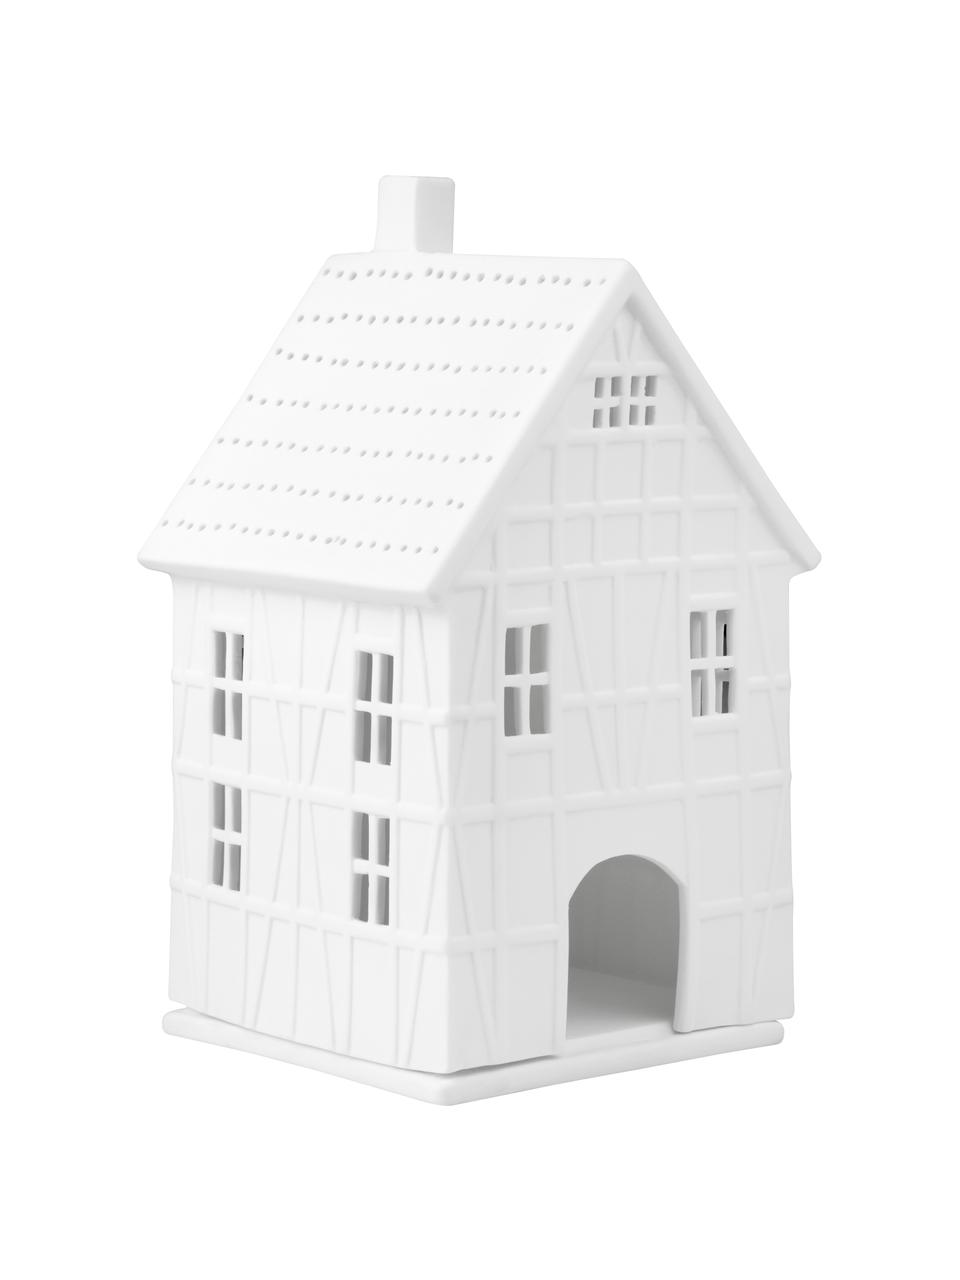 Großes Porzellan-Lichthaus Living in Weiß, Porzellan, Weiß, B 10 x H 19 cm